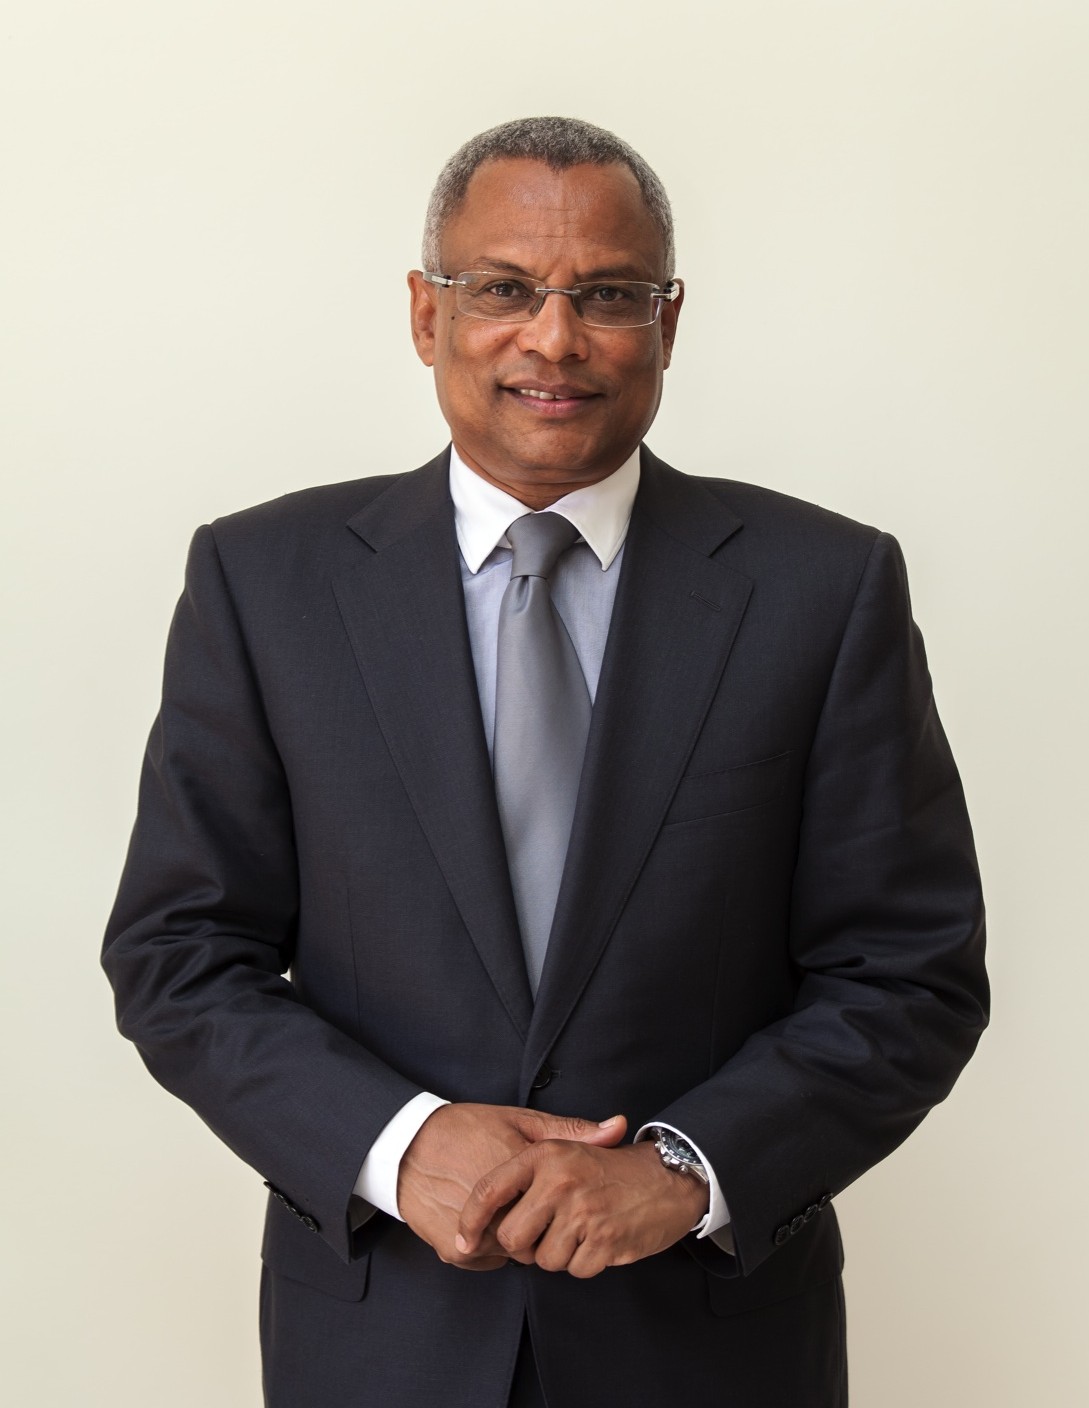 José Maria Neves – Criar consensos para desenvolver Cabo Verde